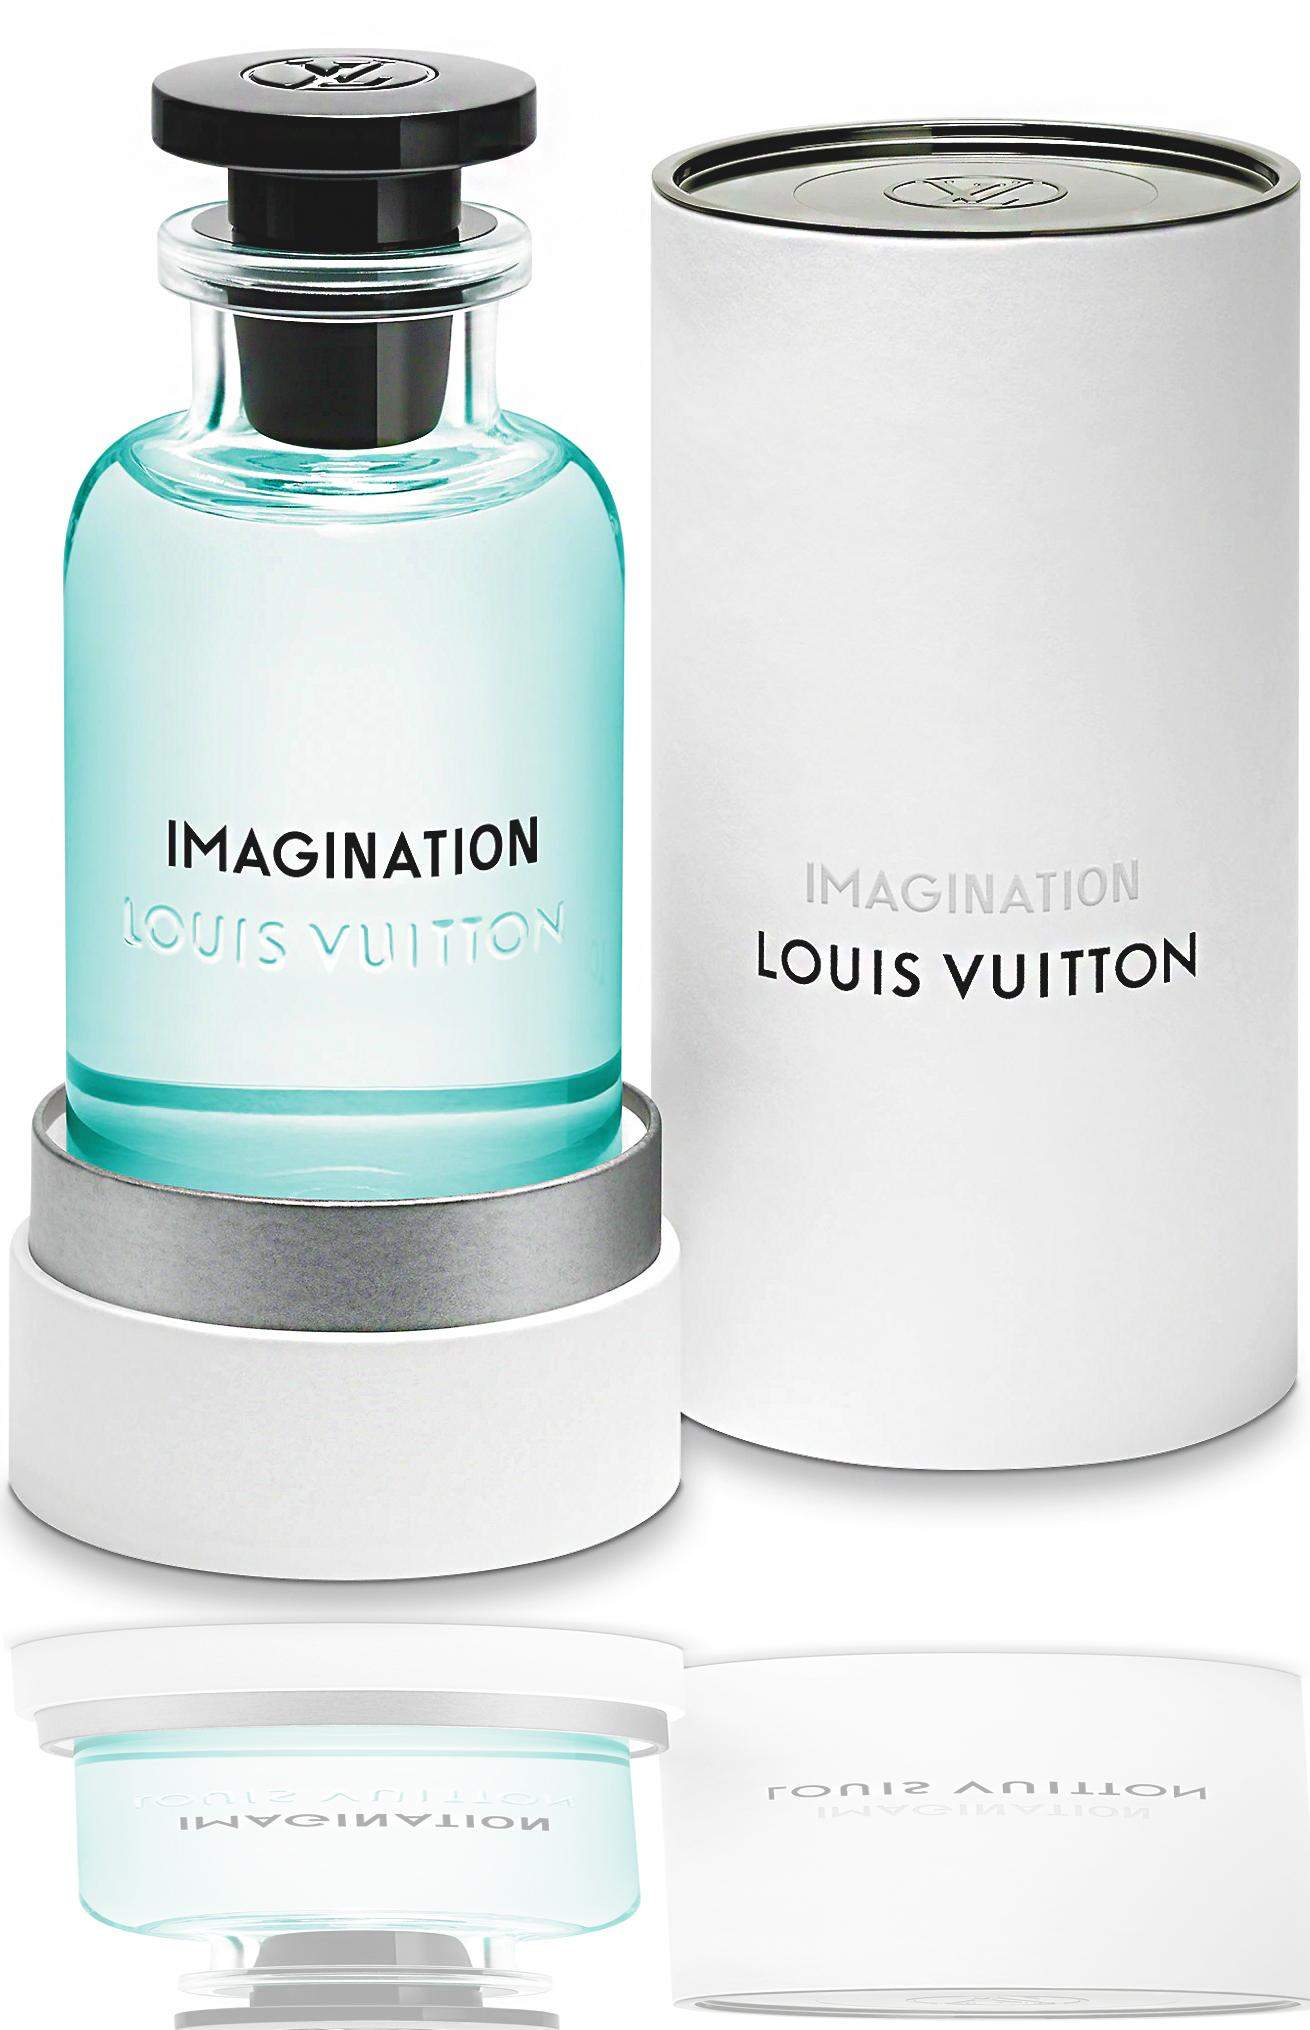 Louis Vuitton Imagination EDP / Kadın Dekant Parfüm  Ven Cosmetic  Türkiye'nin Dekant Parfüm Satıcısı